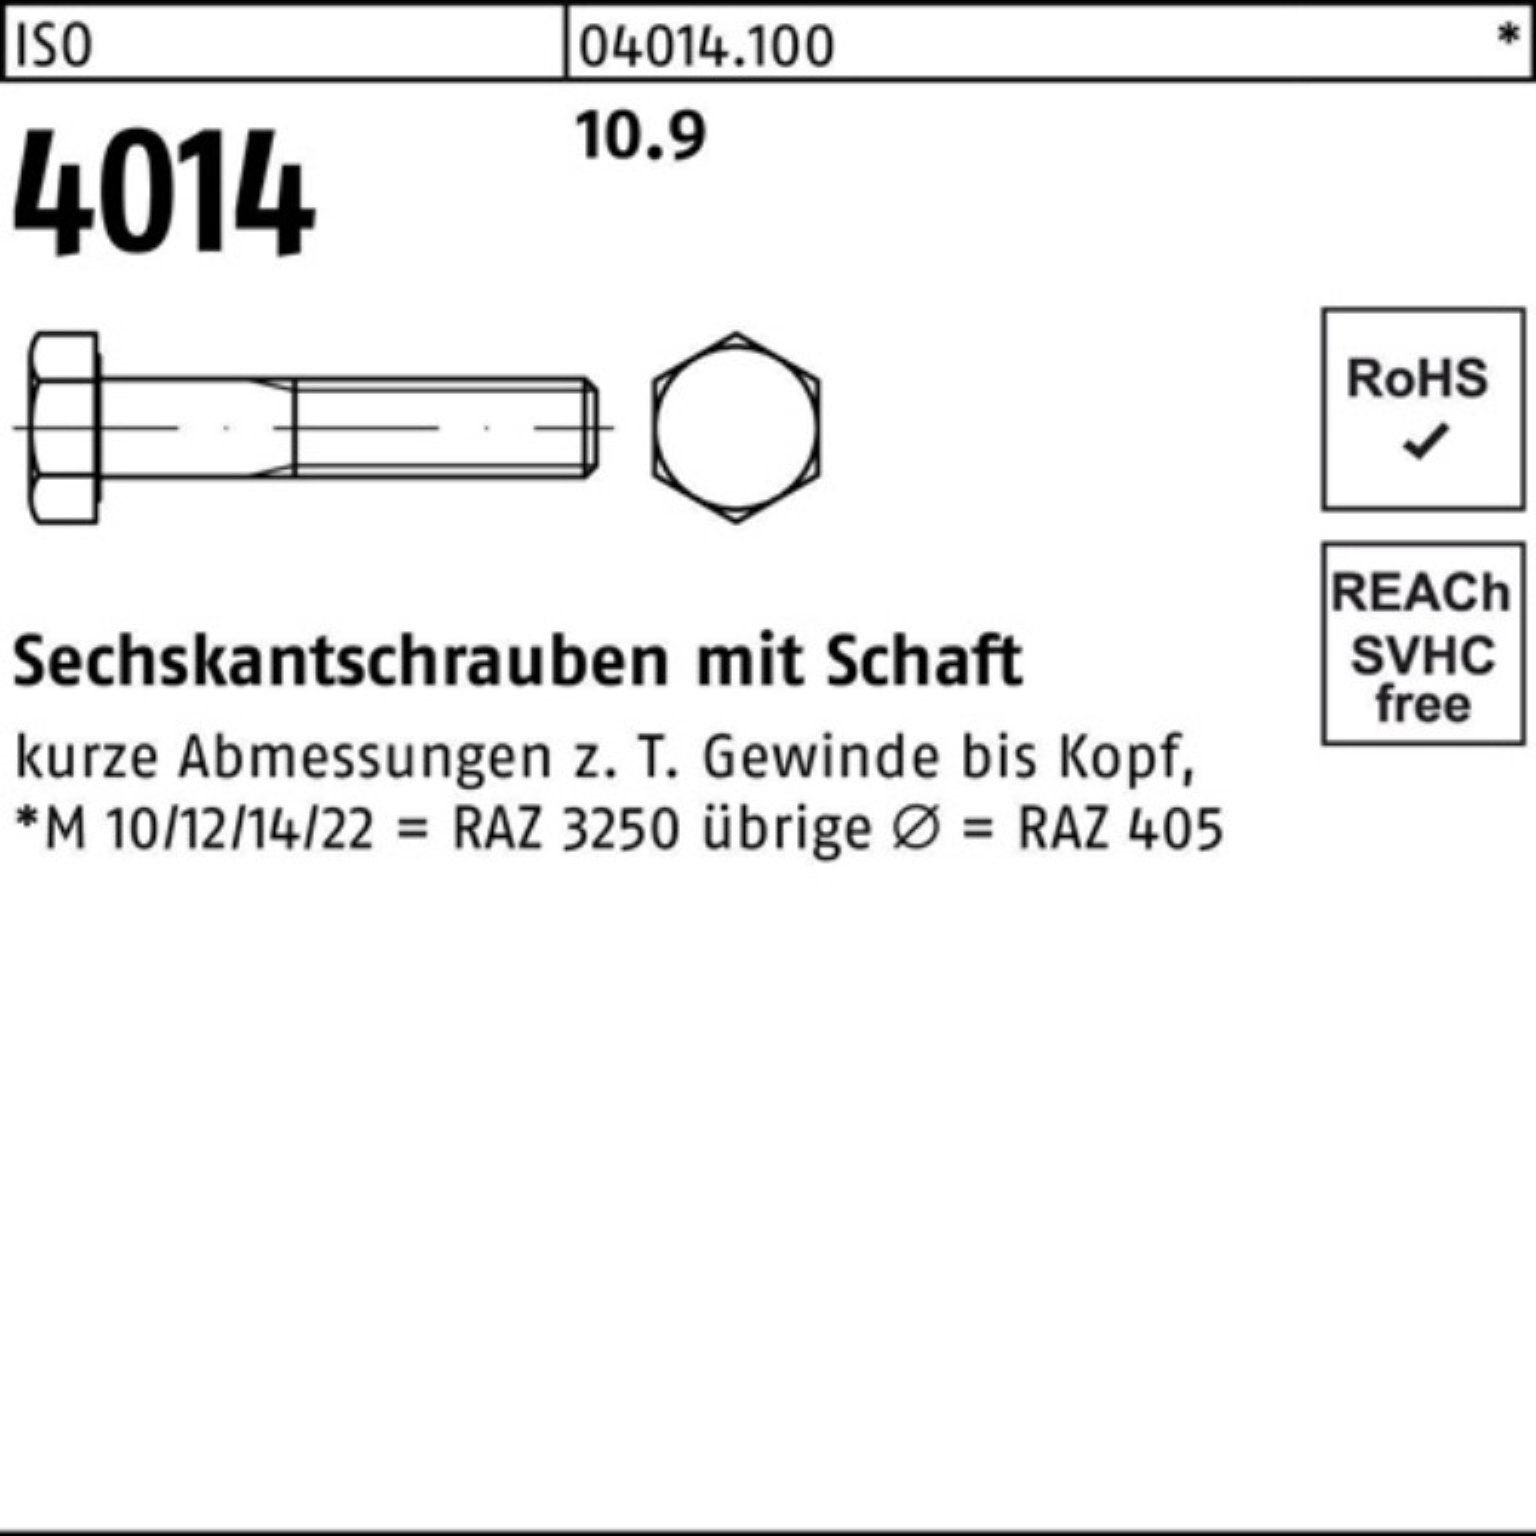 Bufab Sechskantschraube 100er Pack 10.9 Sechskantschraube 4014 Stück ISO IS 50 70 Schaft M14x